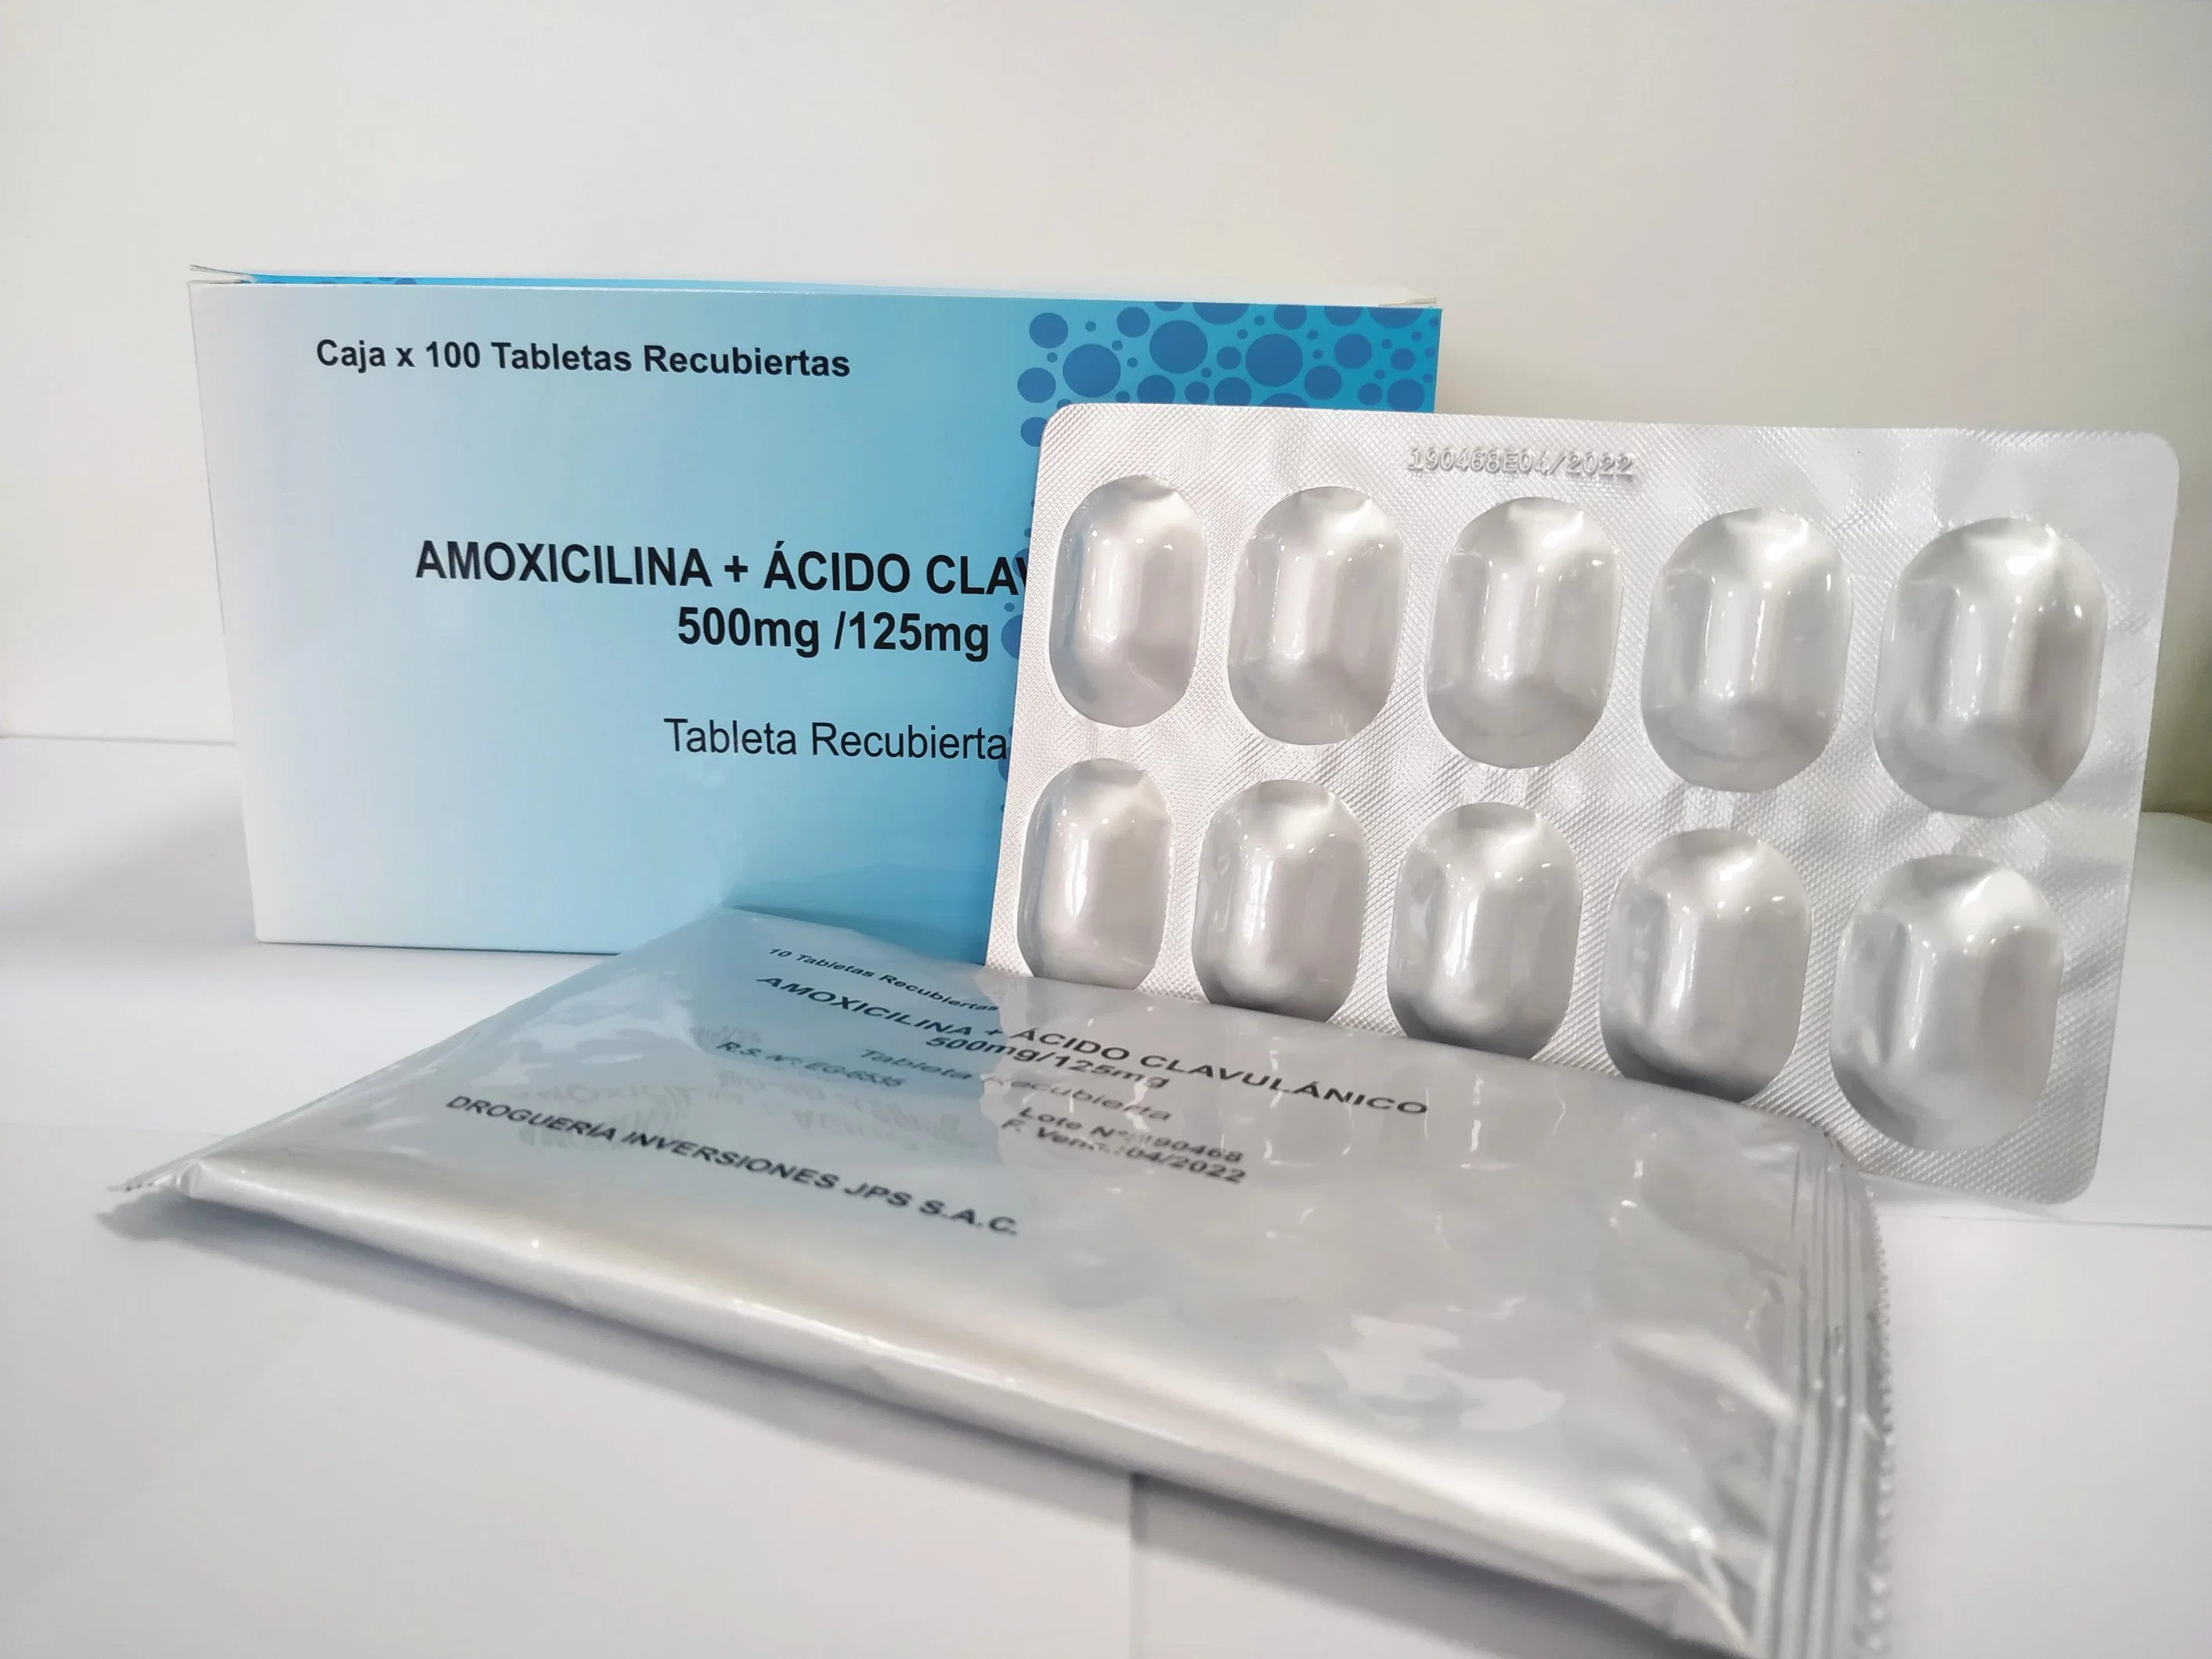 La amoxicilina y clavulanato de potasio farmacéutica tableta 625mg con alta calidad certificado GMP